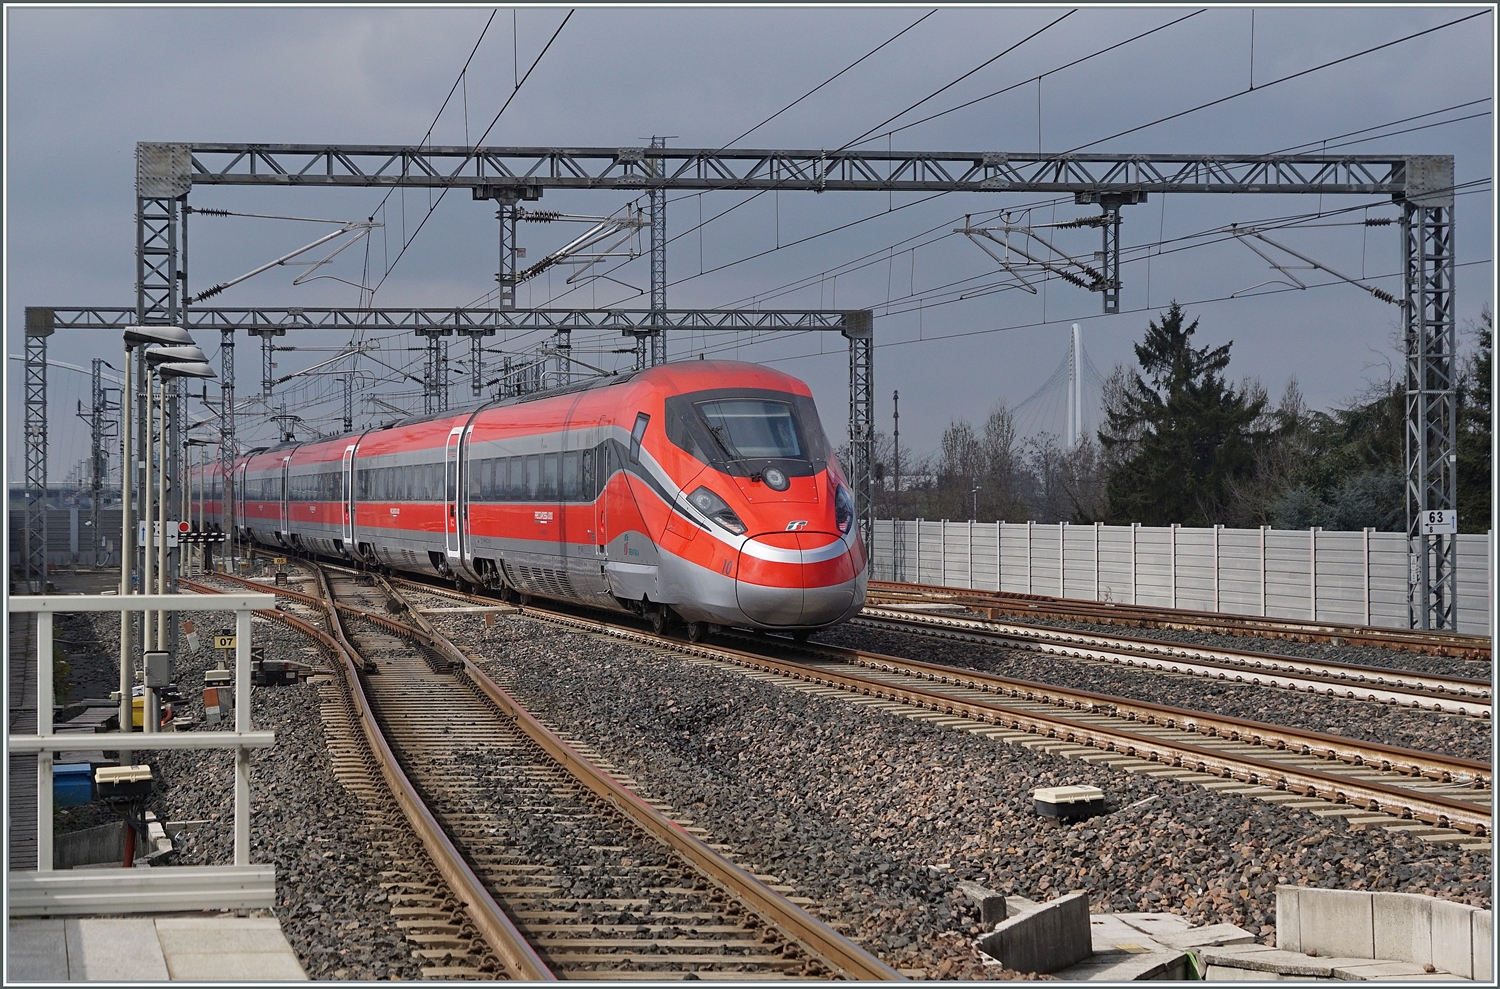 Der FS Treniatalia ETR 400 010 auf dem Weg als Frecciarossa 1000 9624 von Roma nach Milano wurde vom ETR 500 037 etwas ausgebremst, und so fährt er etwas weniger schnell durch die Station von Reggio Emilia AV. 

14. März 2023